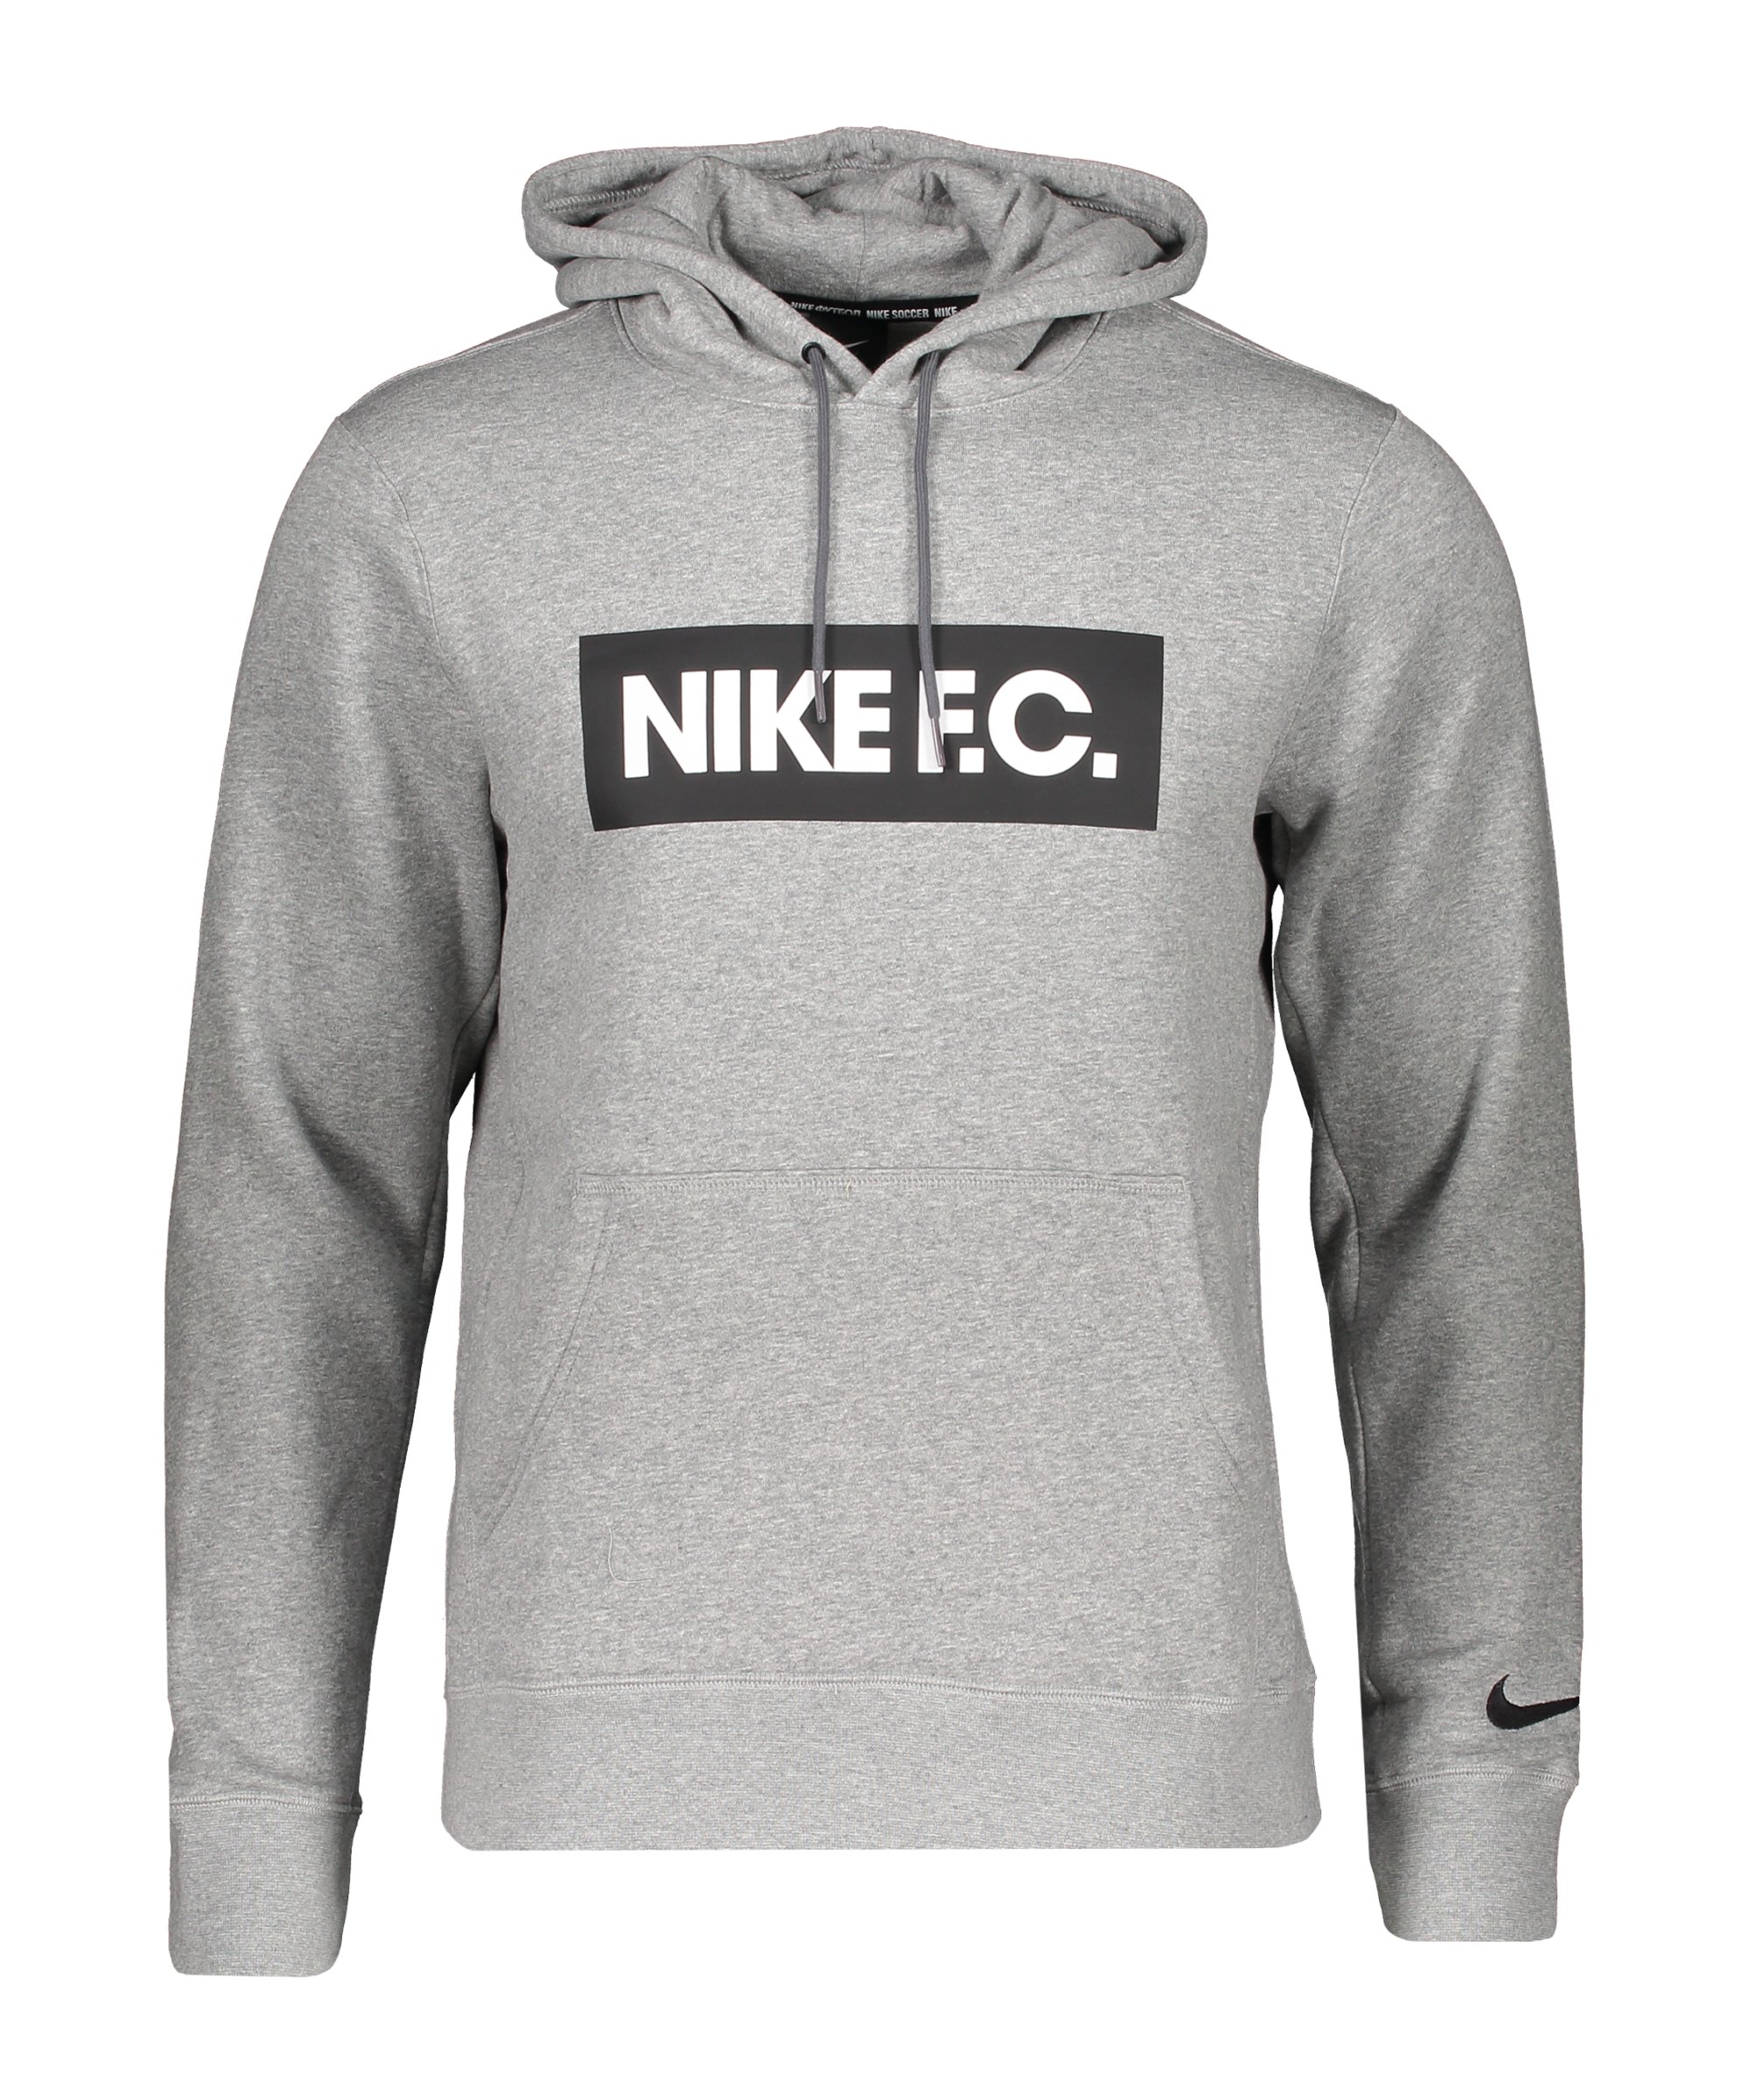 Nike F.C. Fleece Hoody Grau F021 - grau